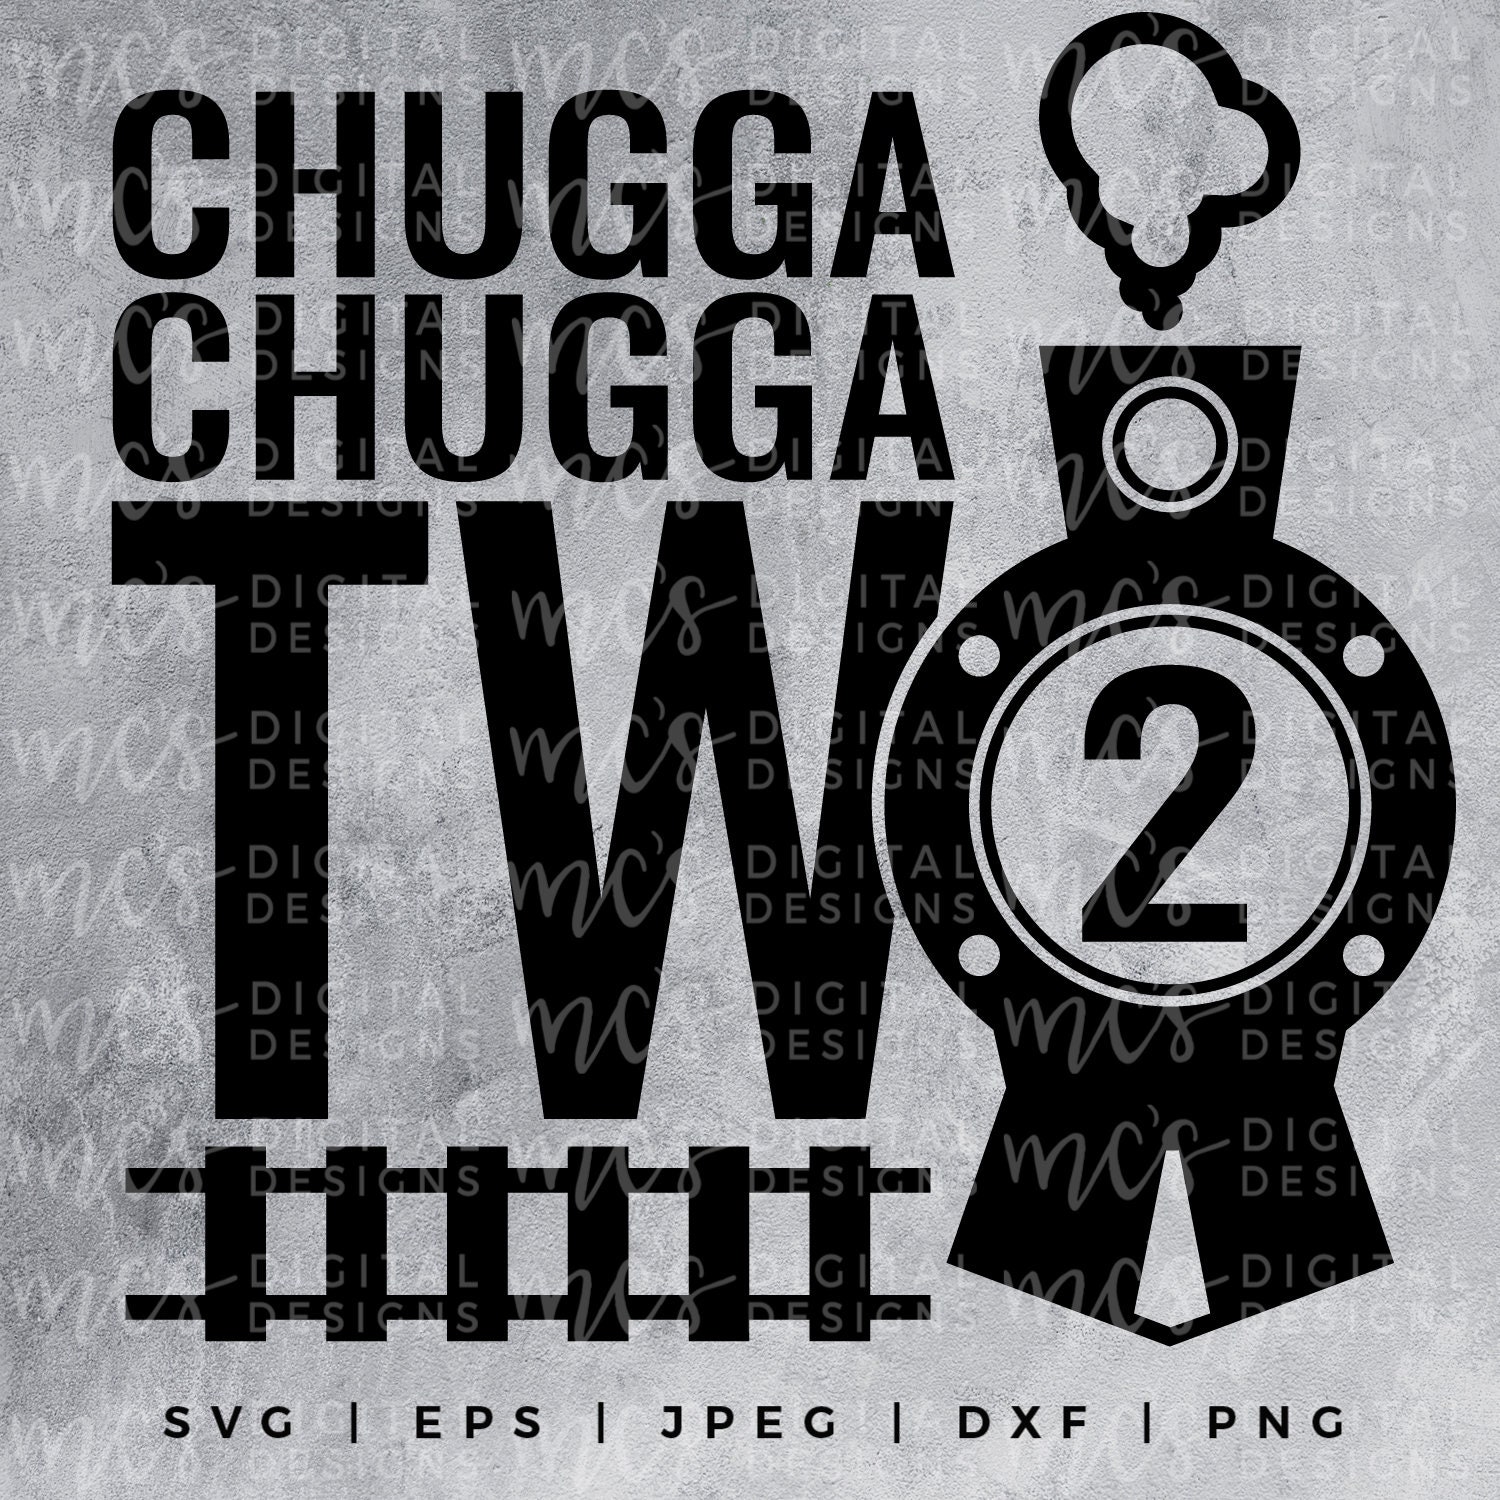 Free Printable Chugga Chugga Two Two - Free Printable Templates